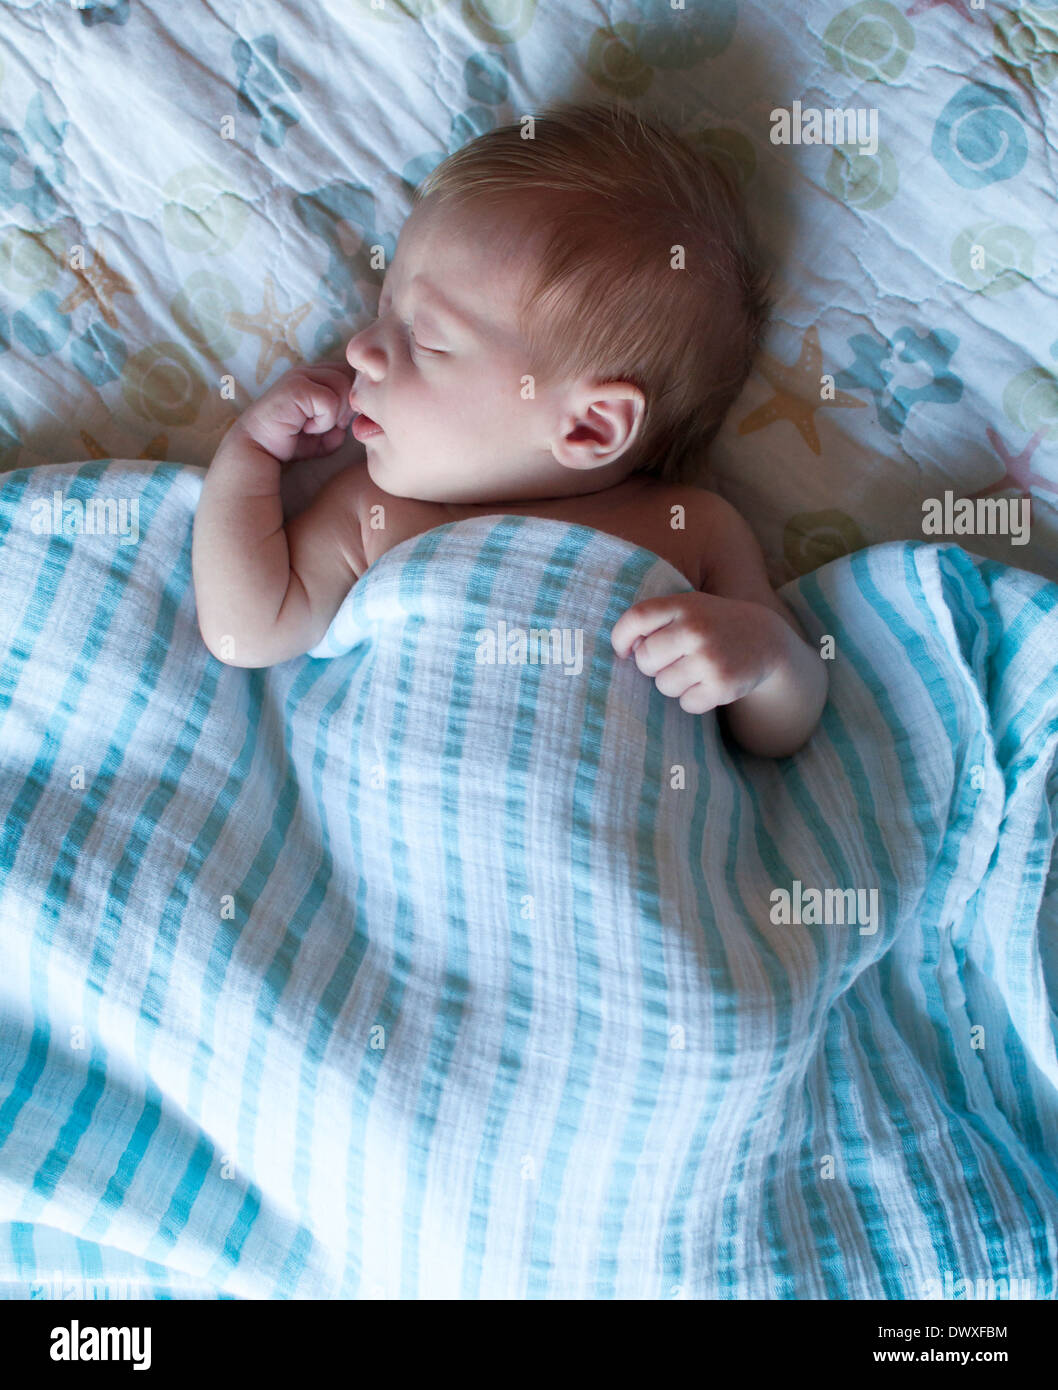 Newborn baby sleeping Stock Photo